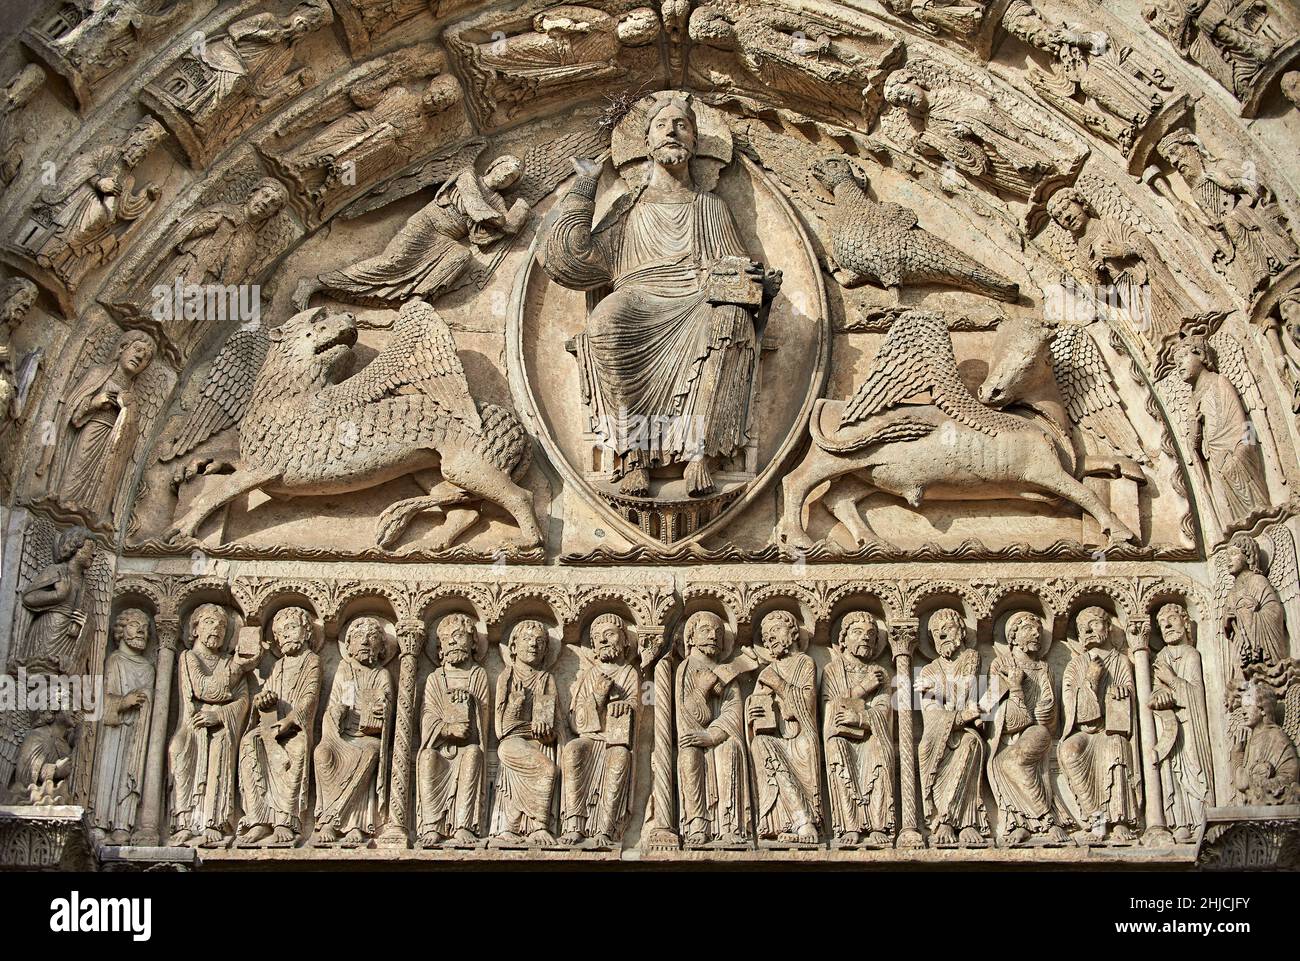 Catedral de Chartres estatuas góticas y esculturas exteriores Fachada oeste, Central Portal tympanum, c. 1145. El tímpano muestra esculturas góticas de Jesu Foto de stock